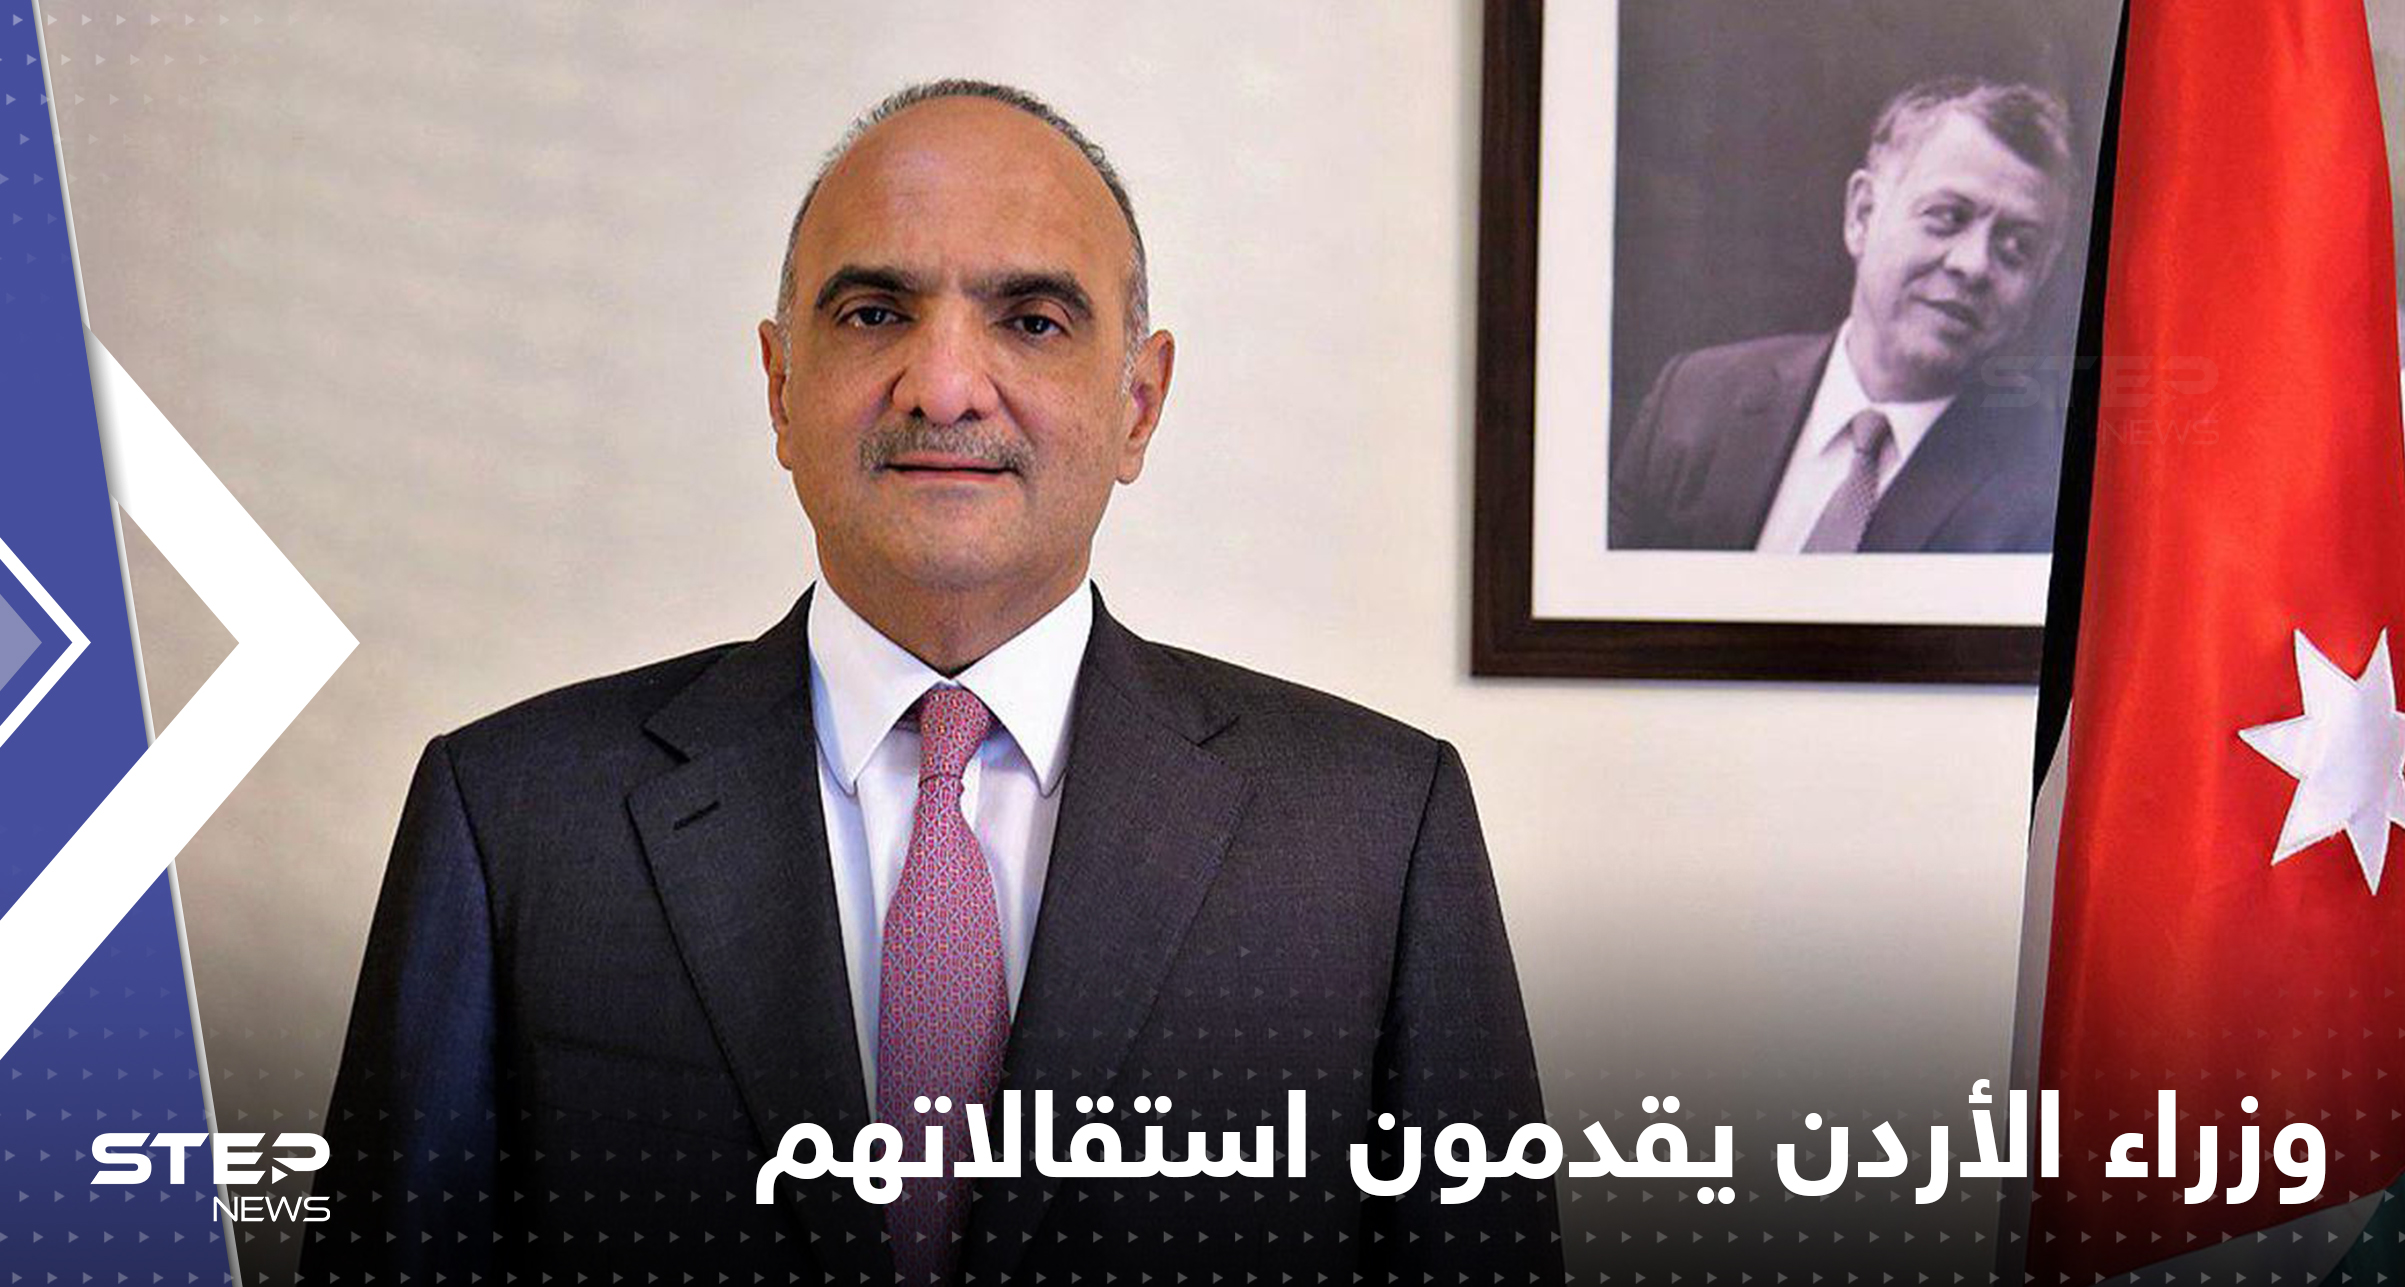 الأردن.. وزراء حكومة الخصاونة يقدمون استقالاتهم